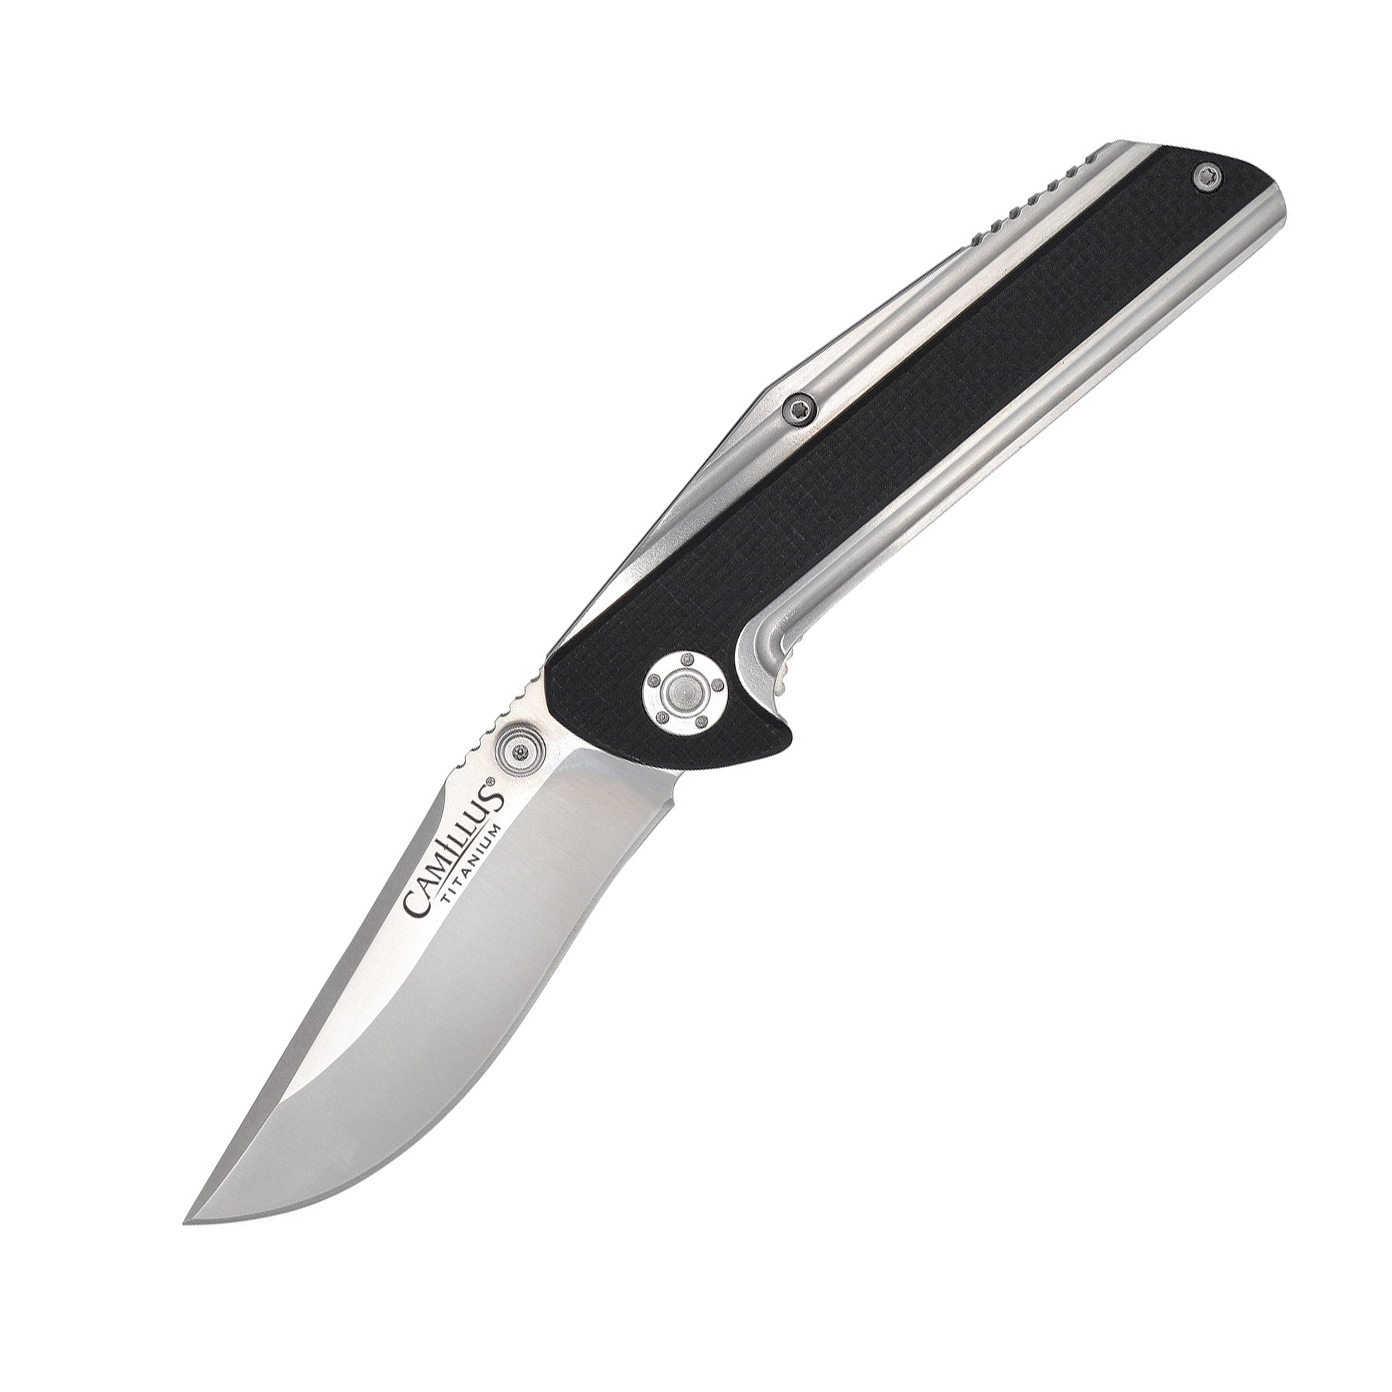 Складной нож Camillus Sevens, сталь AUS-8, рукоять стеклотекстолит G-10, сталь